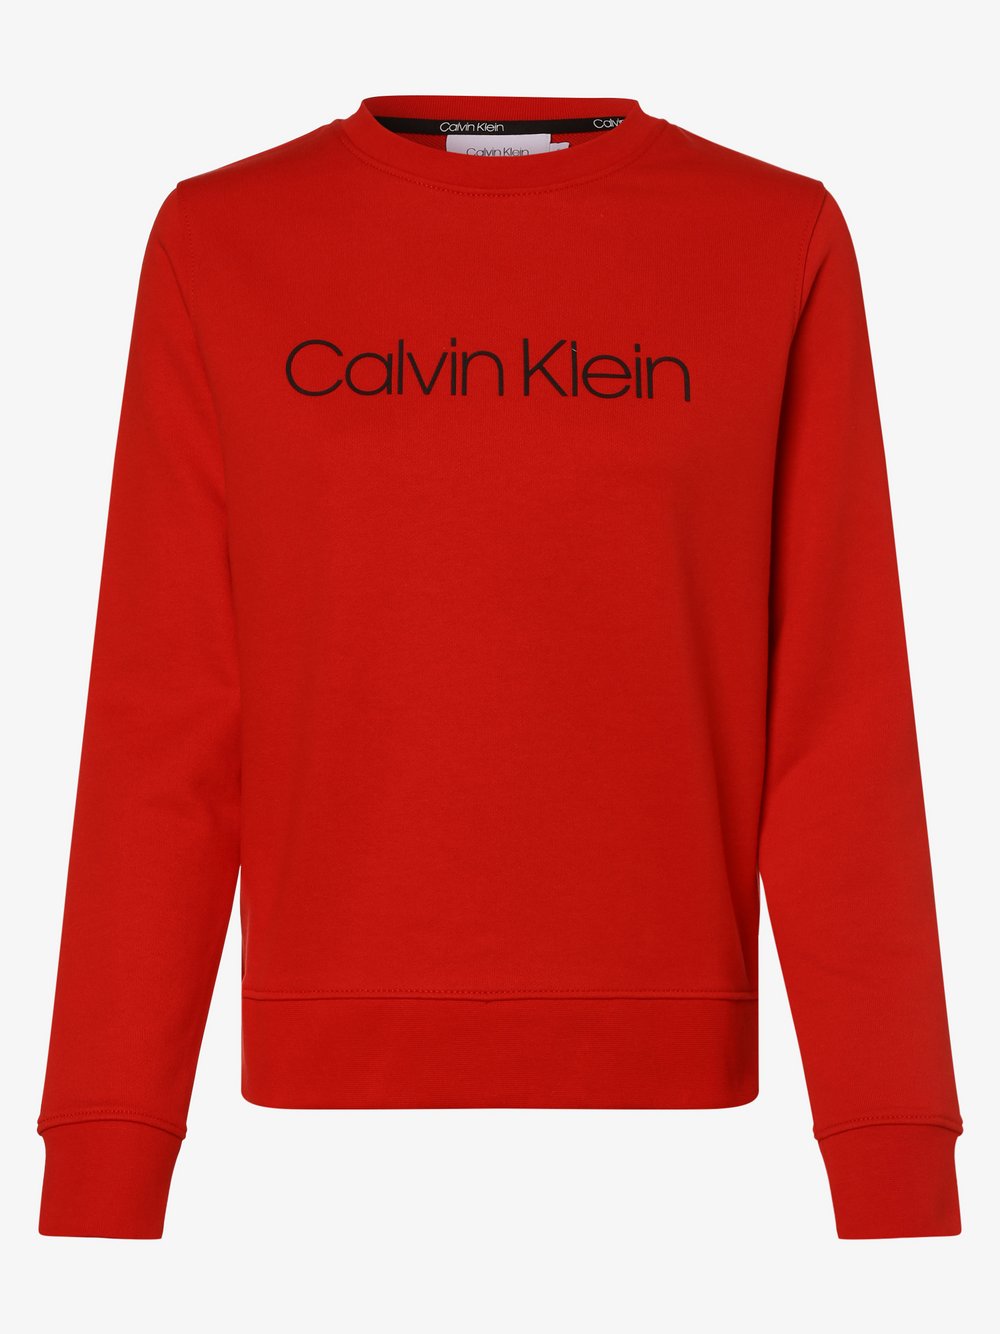 Calvin Klein - Damska bluza nierozpinana, czerwony